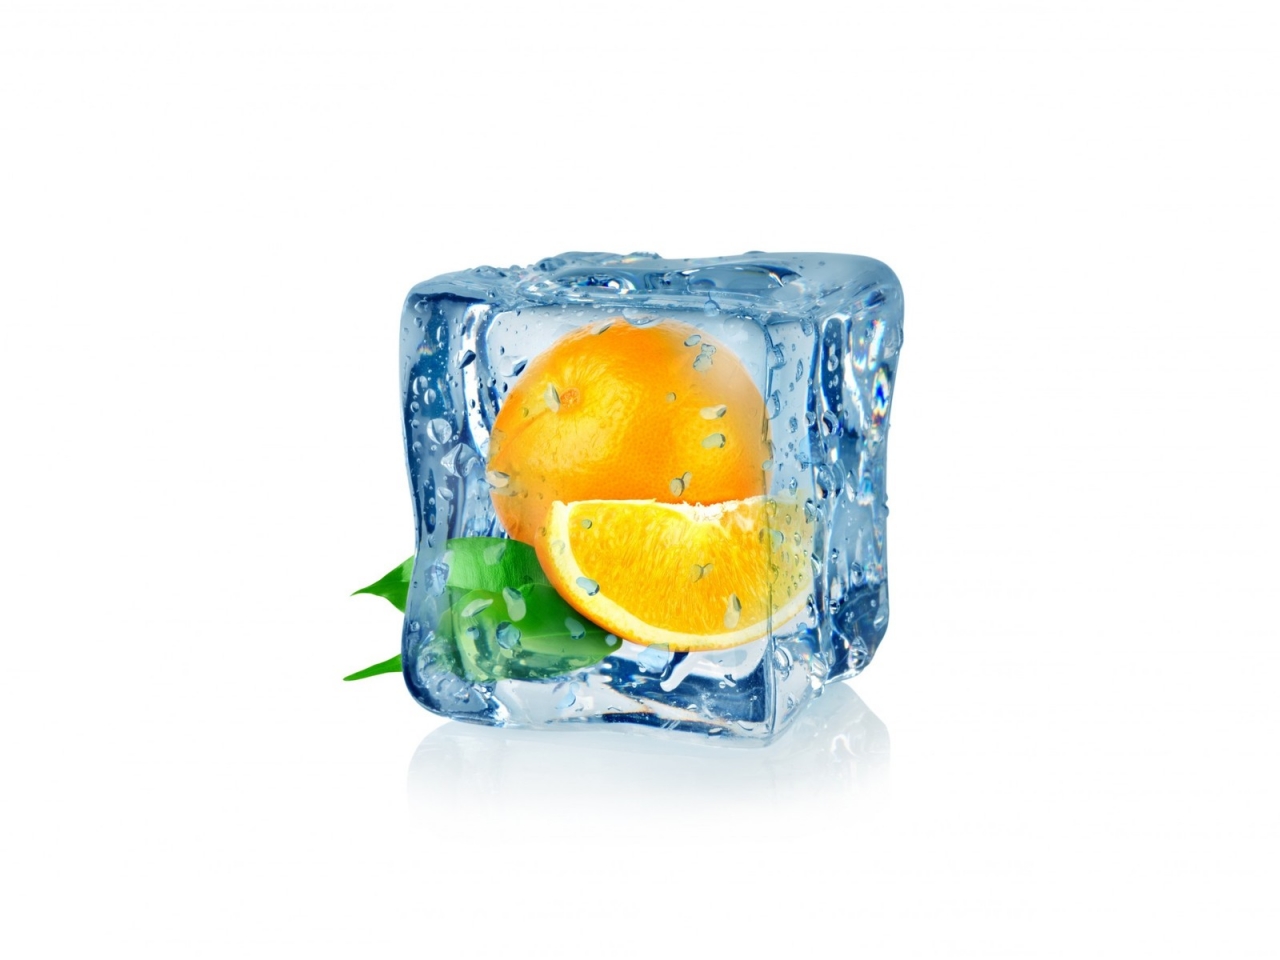 Frozen Orange for 1280 x 960 resolution